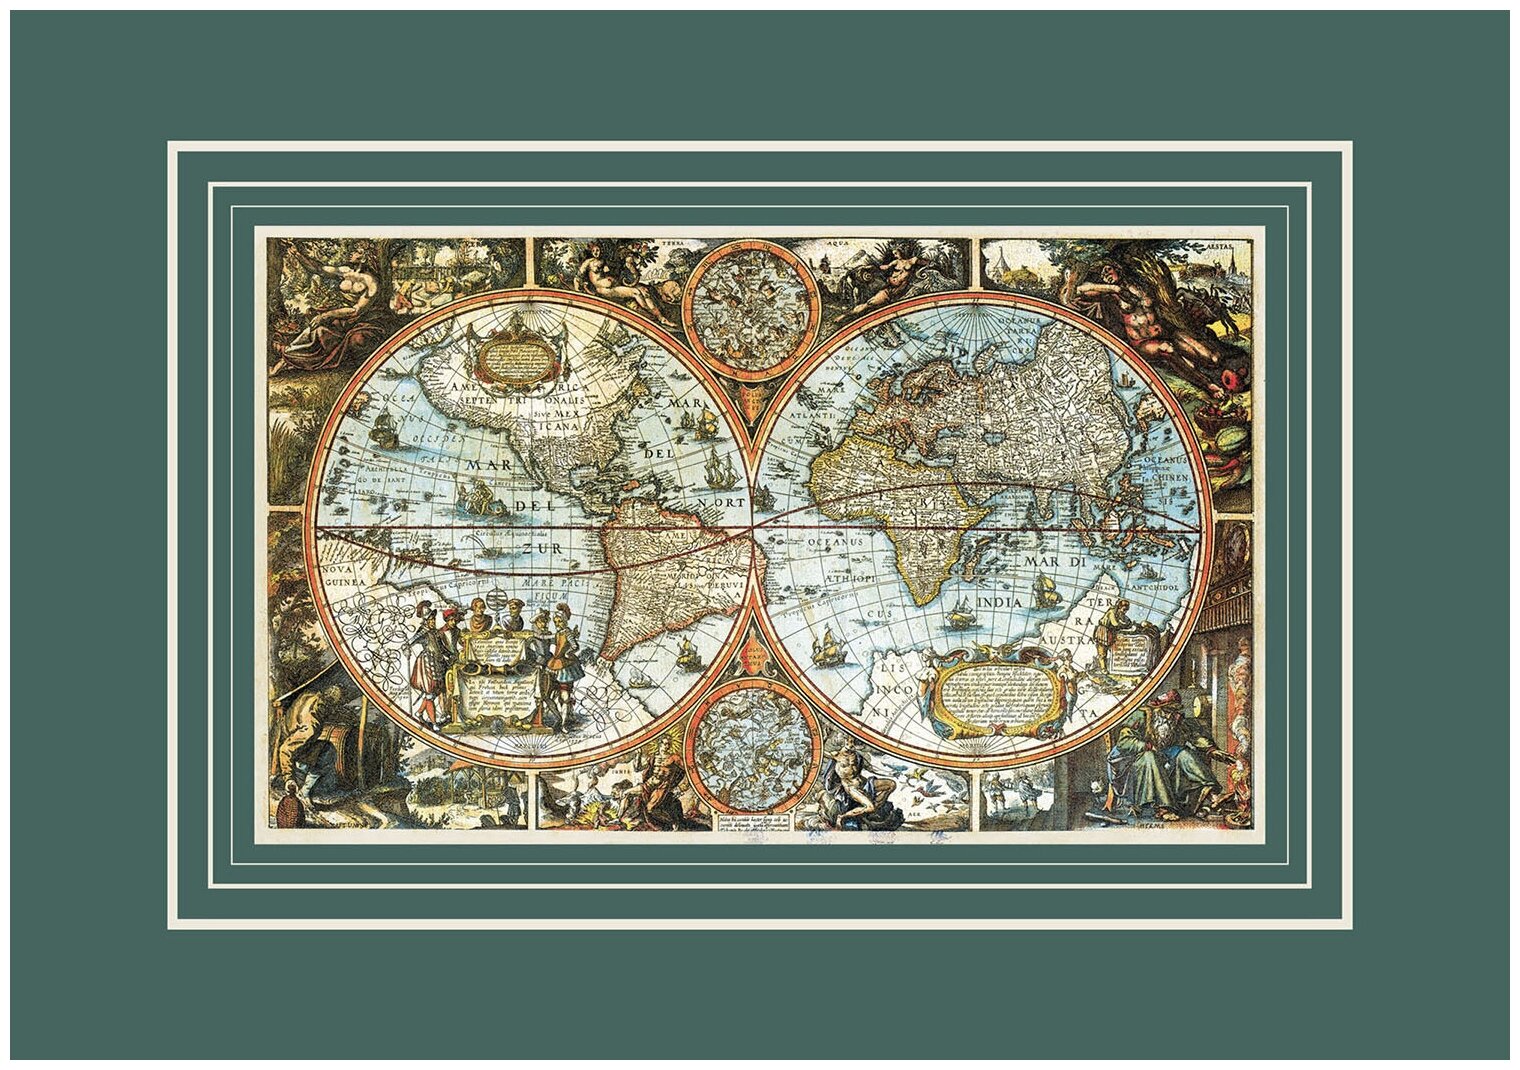 Большая карта мира старинная 1683 г размер 98х68 см декор интерьера. Подарок на 23 февраля начальнику/госслужащему/чиновнику.